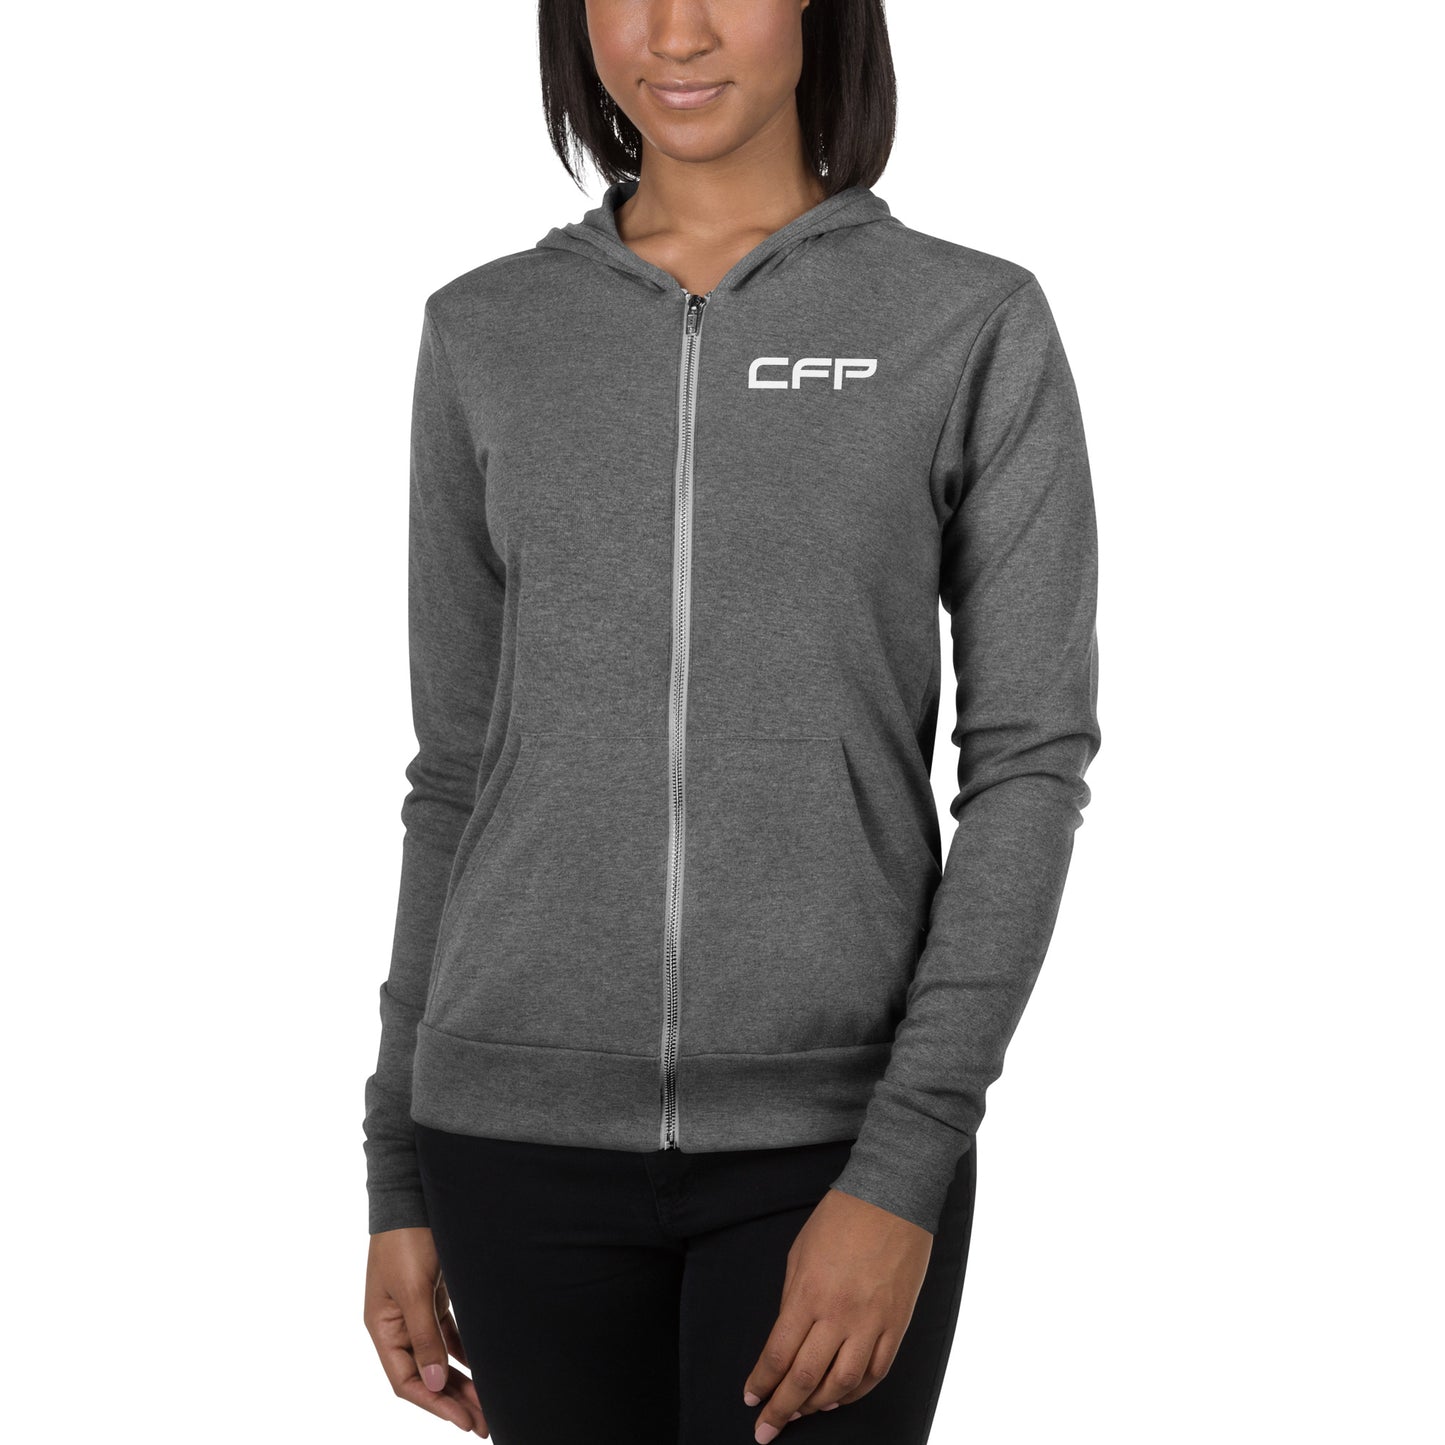 CFP Lightweight zip hoodie